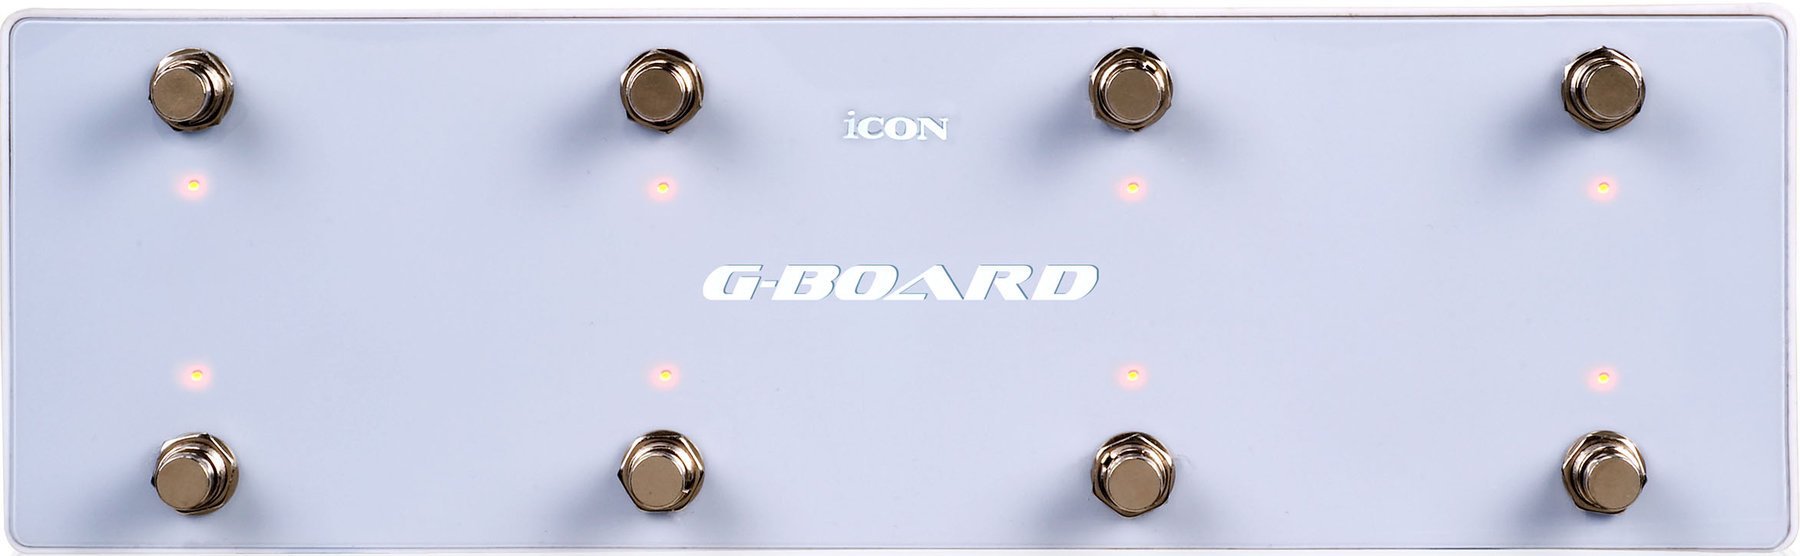 Nožno stikalo iCON G-Board white